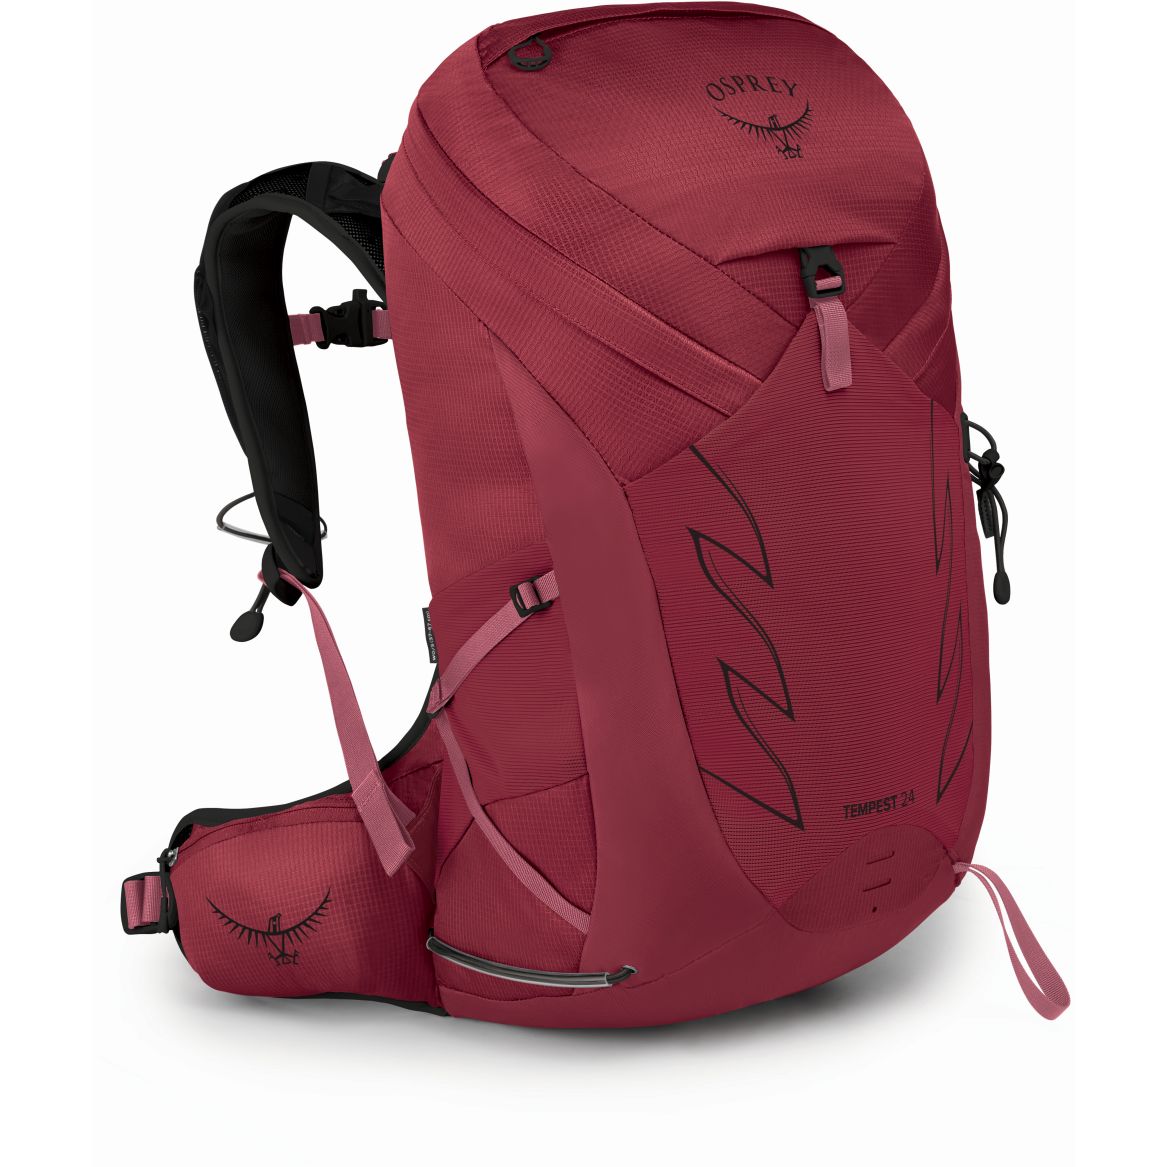 Produktbild von Osprey Tempest 24 Rucksack Damen - Kakio Pink - M/L